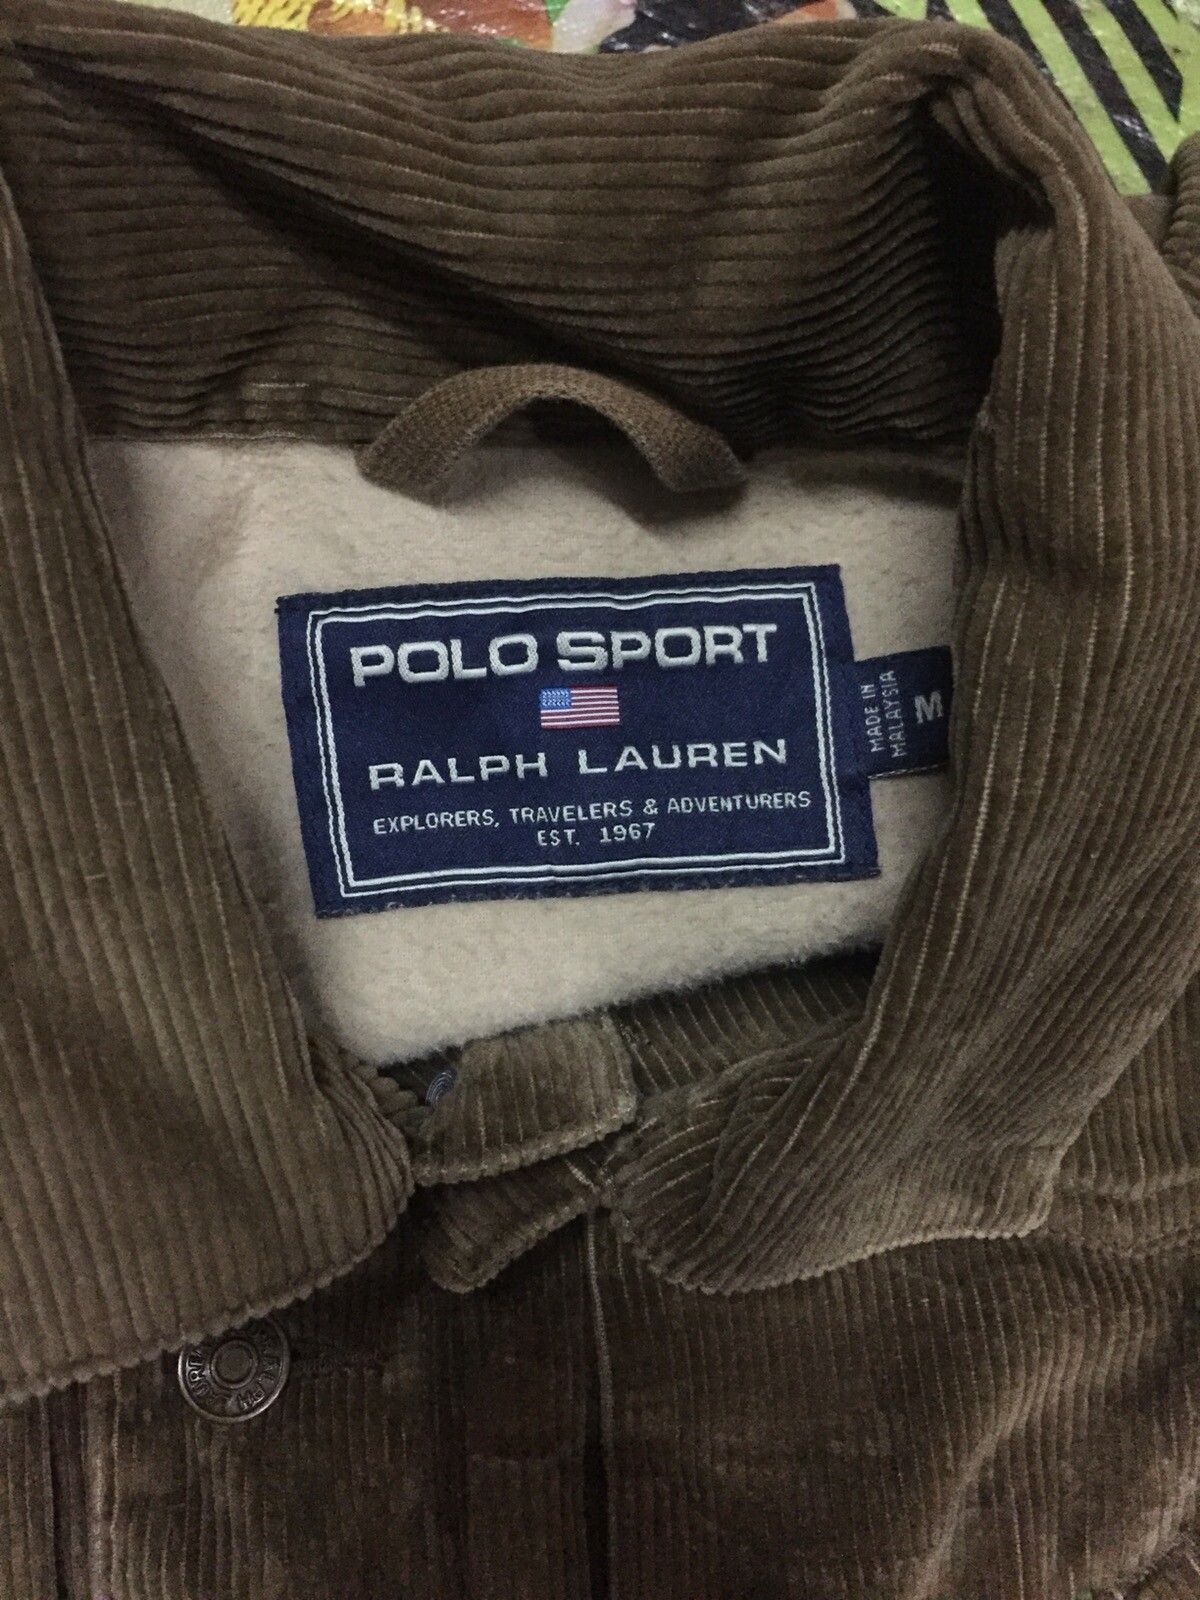 Polo Ralph Lauren - Polo Sport Ralph Lauren Corduroy Jacket - 2